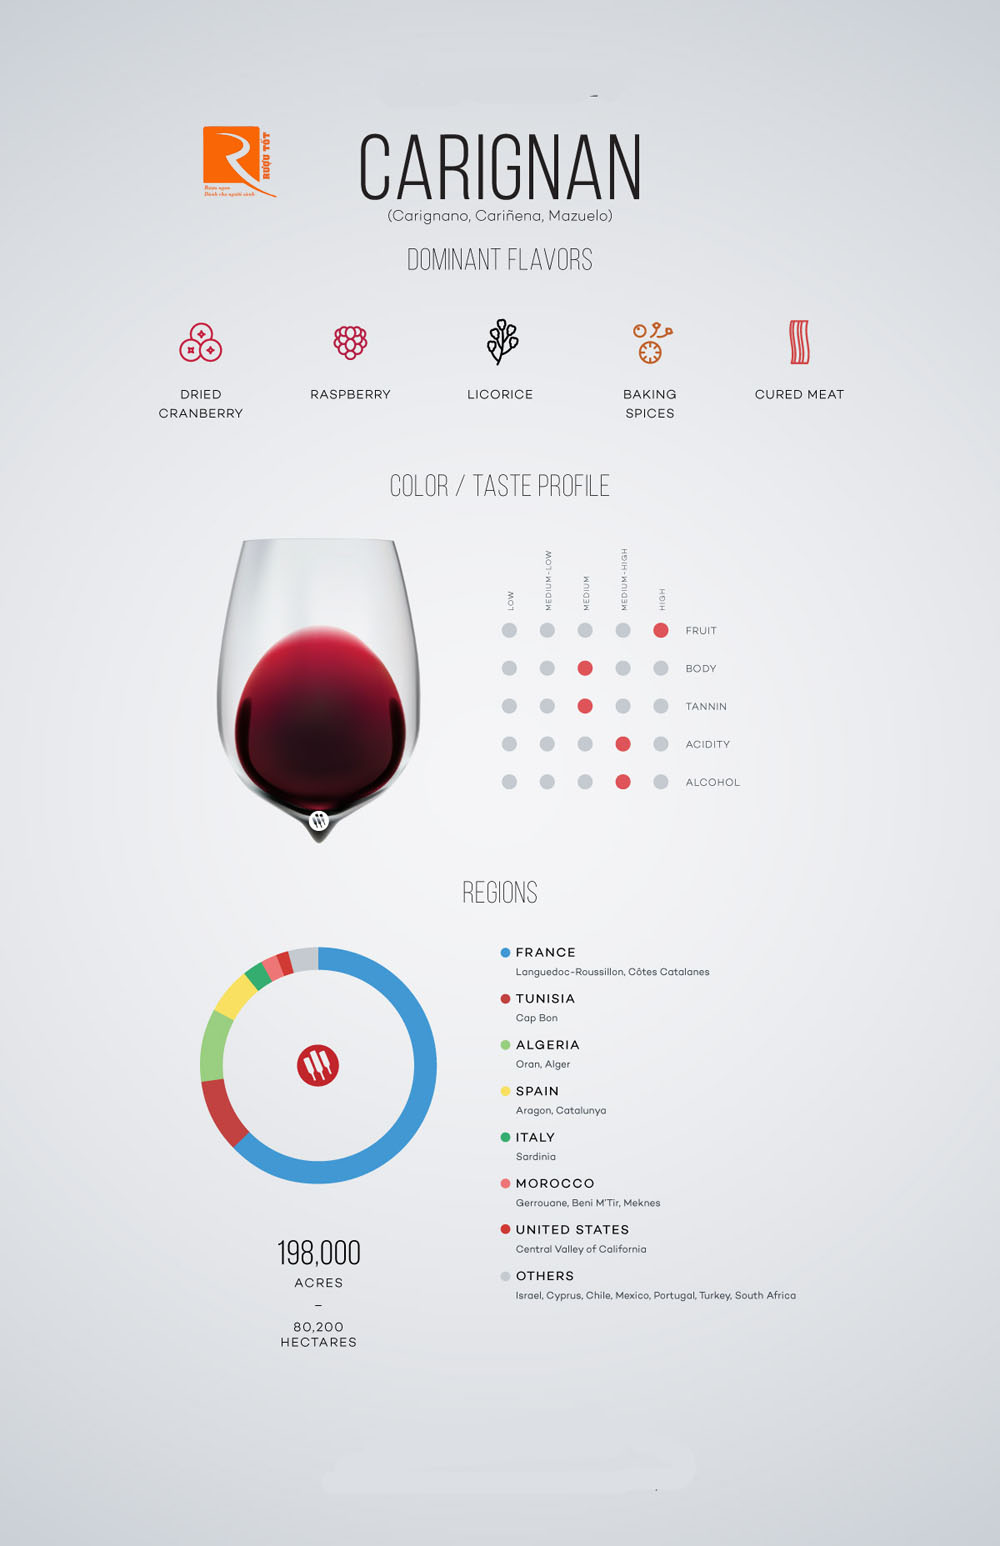 Những thông tin cơ bản về rượu Carignan.